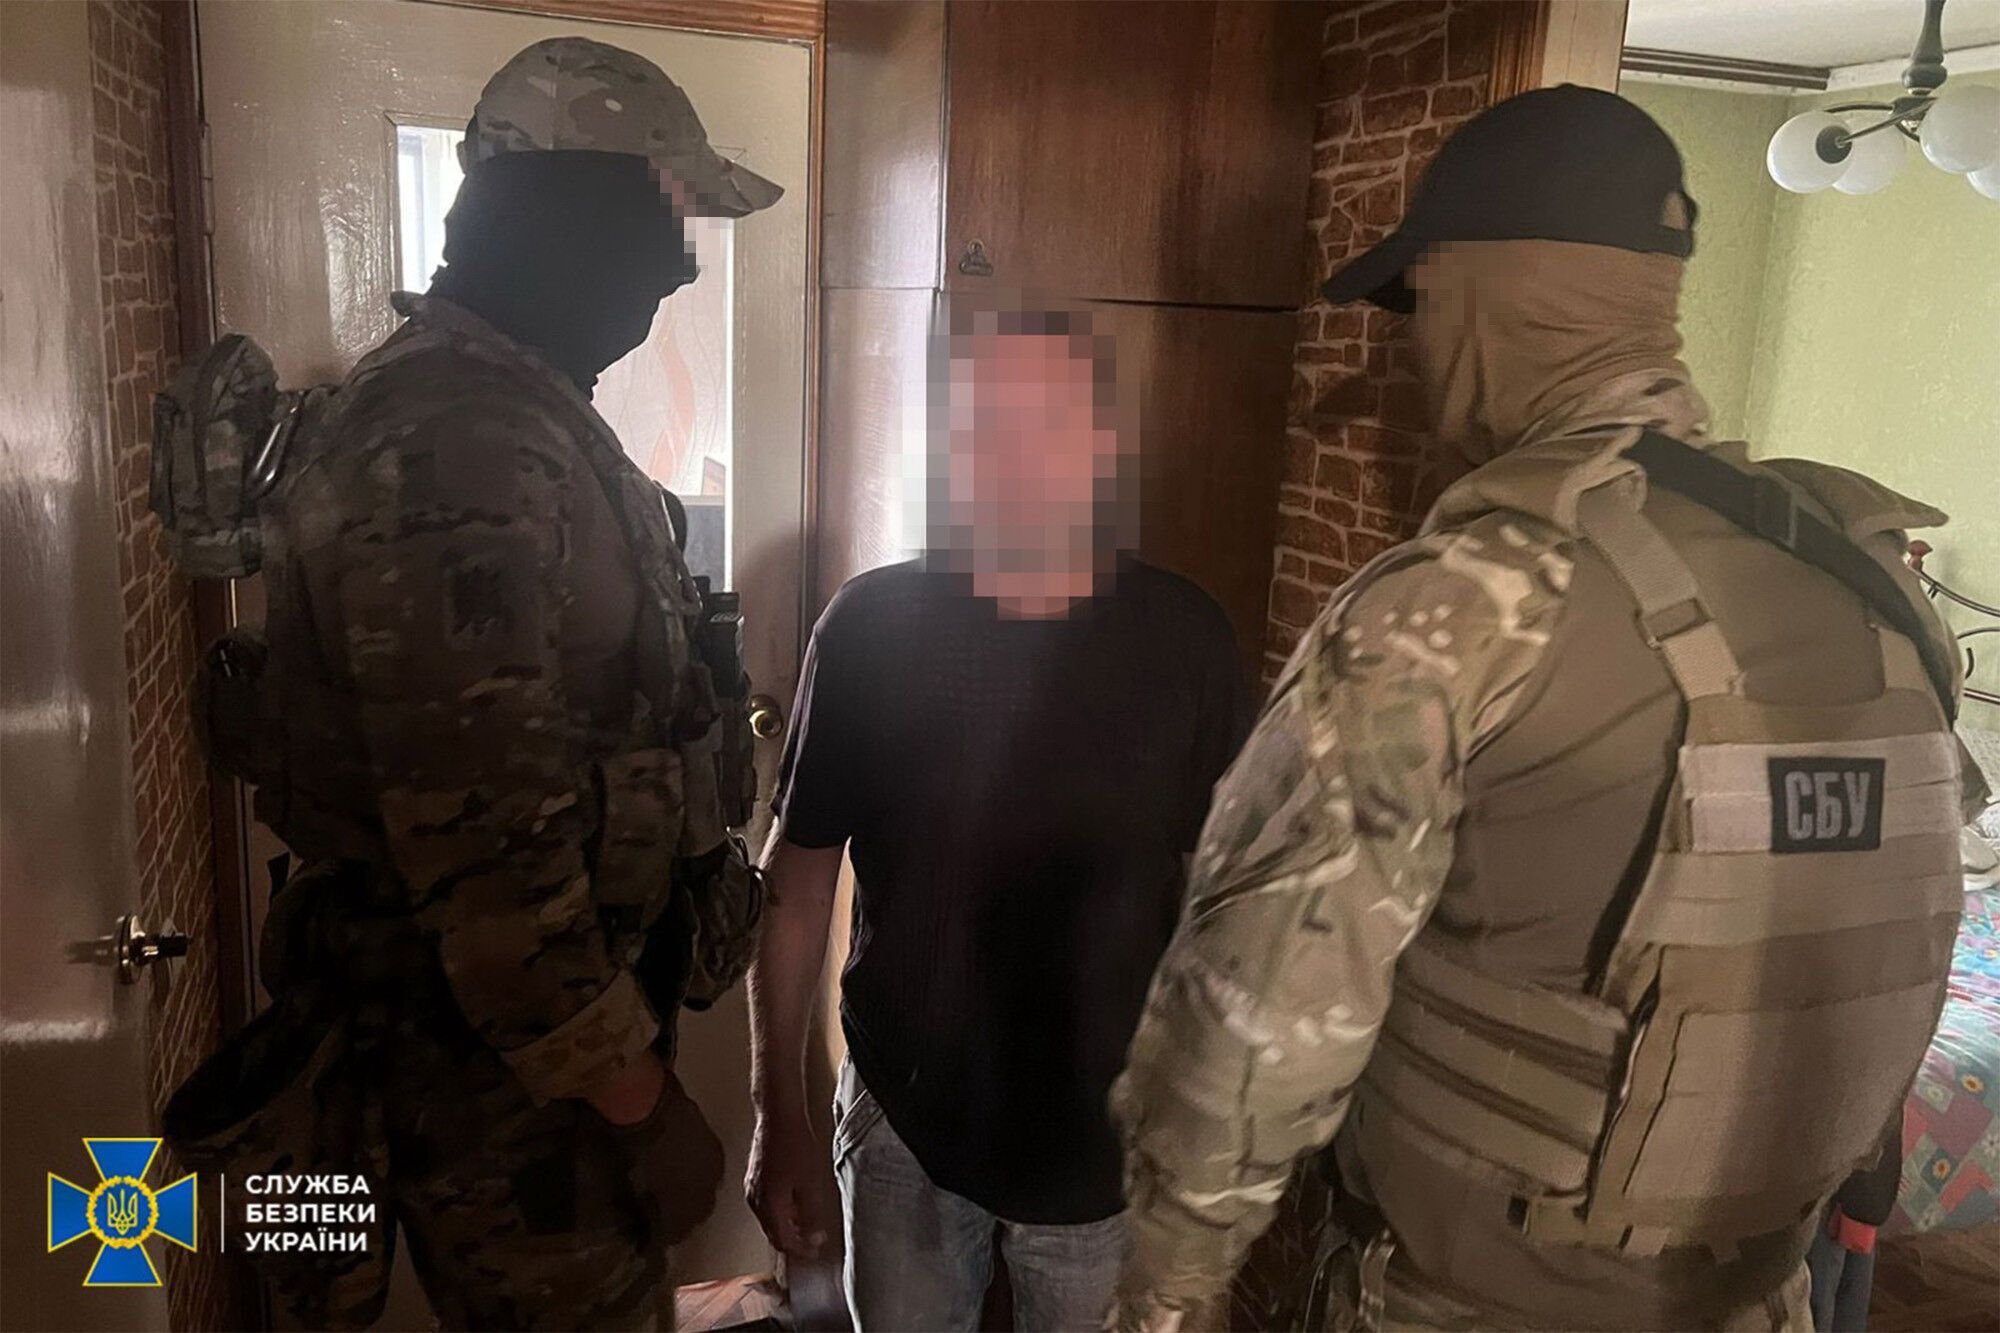 СБУ задержала информатора ФСБ, который сливал врагу данные о маршрутах ВСУ и количестве техники на Донетчине. Фото